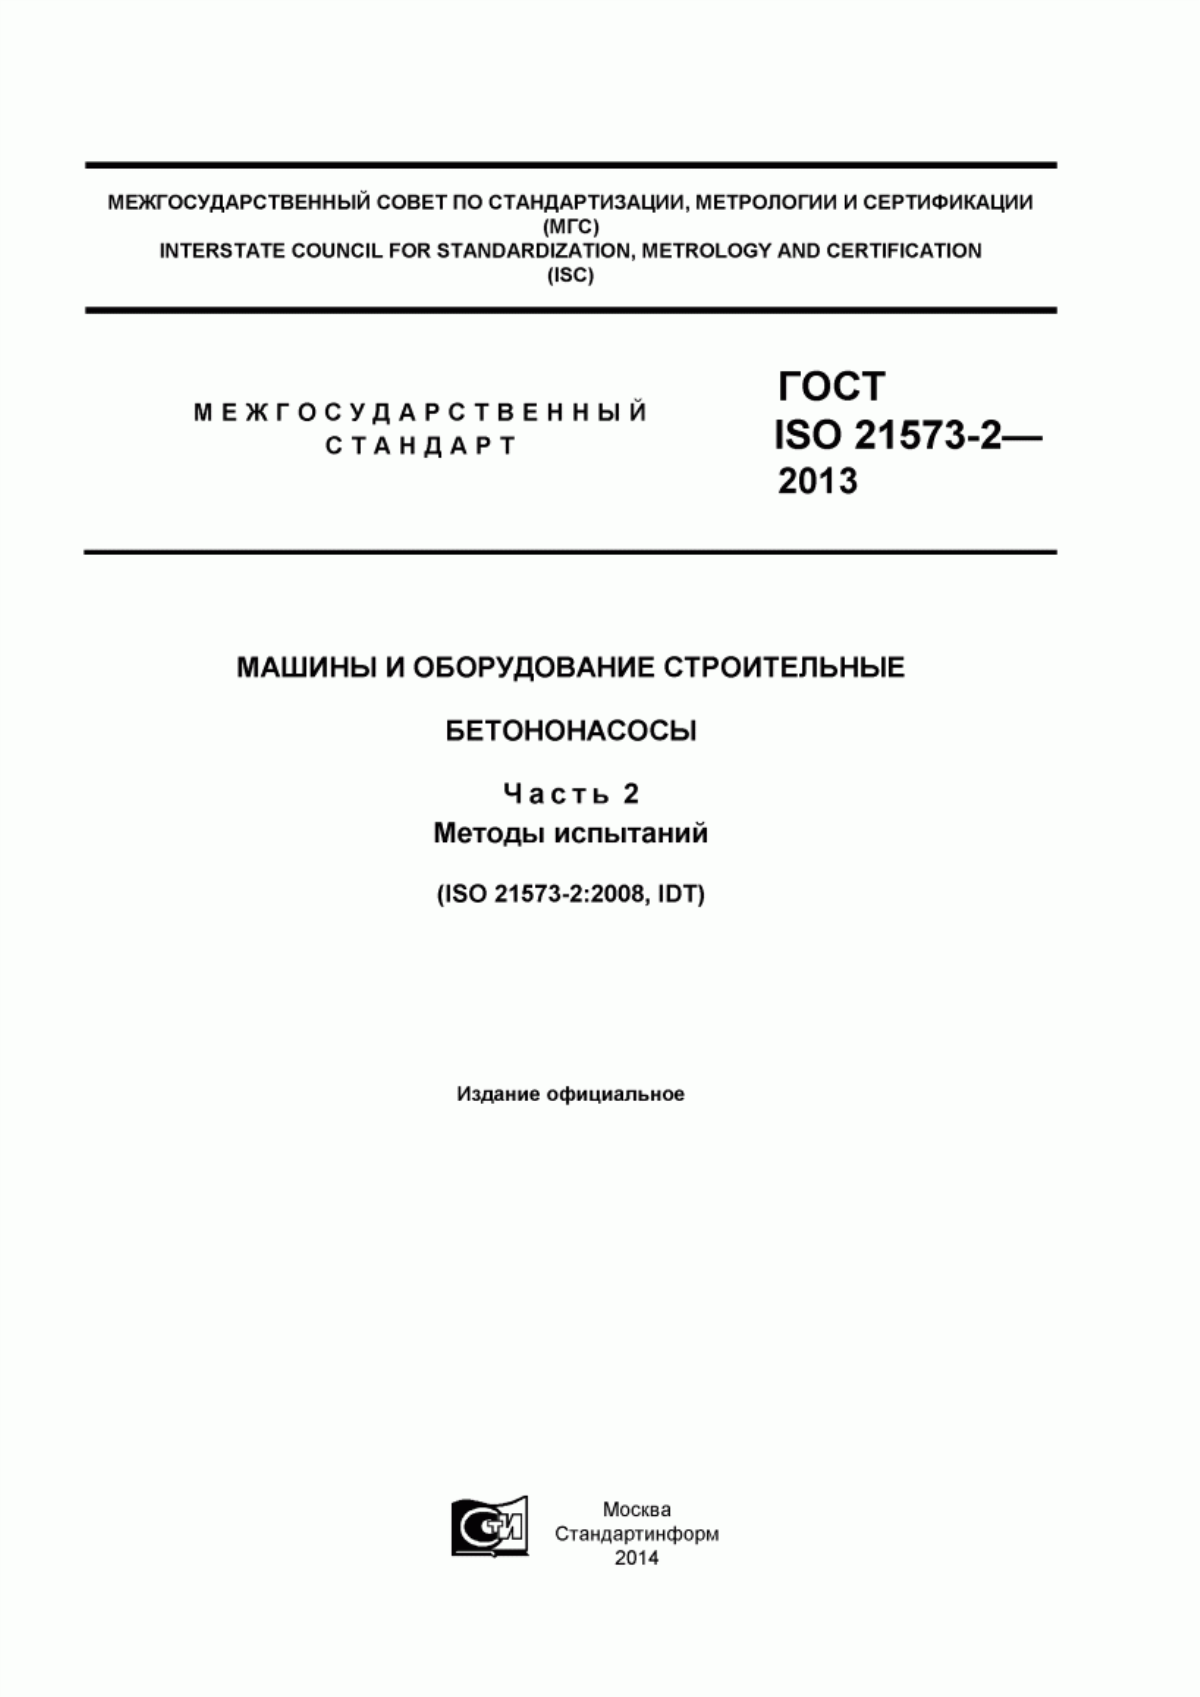 ГОСТ ISO 21573-2-2013 Машины и оборудование строительные. Бетононасосы. Часть 2. Методы испытаний